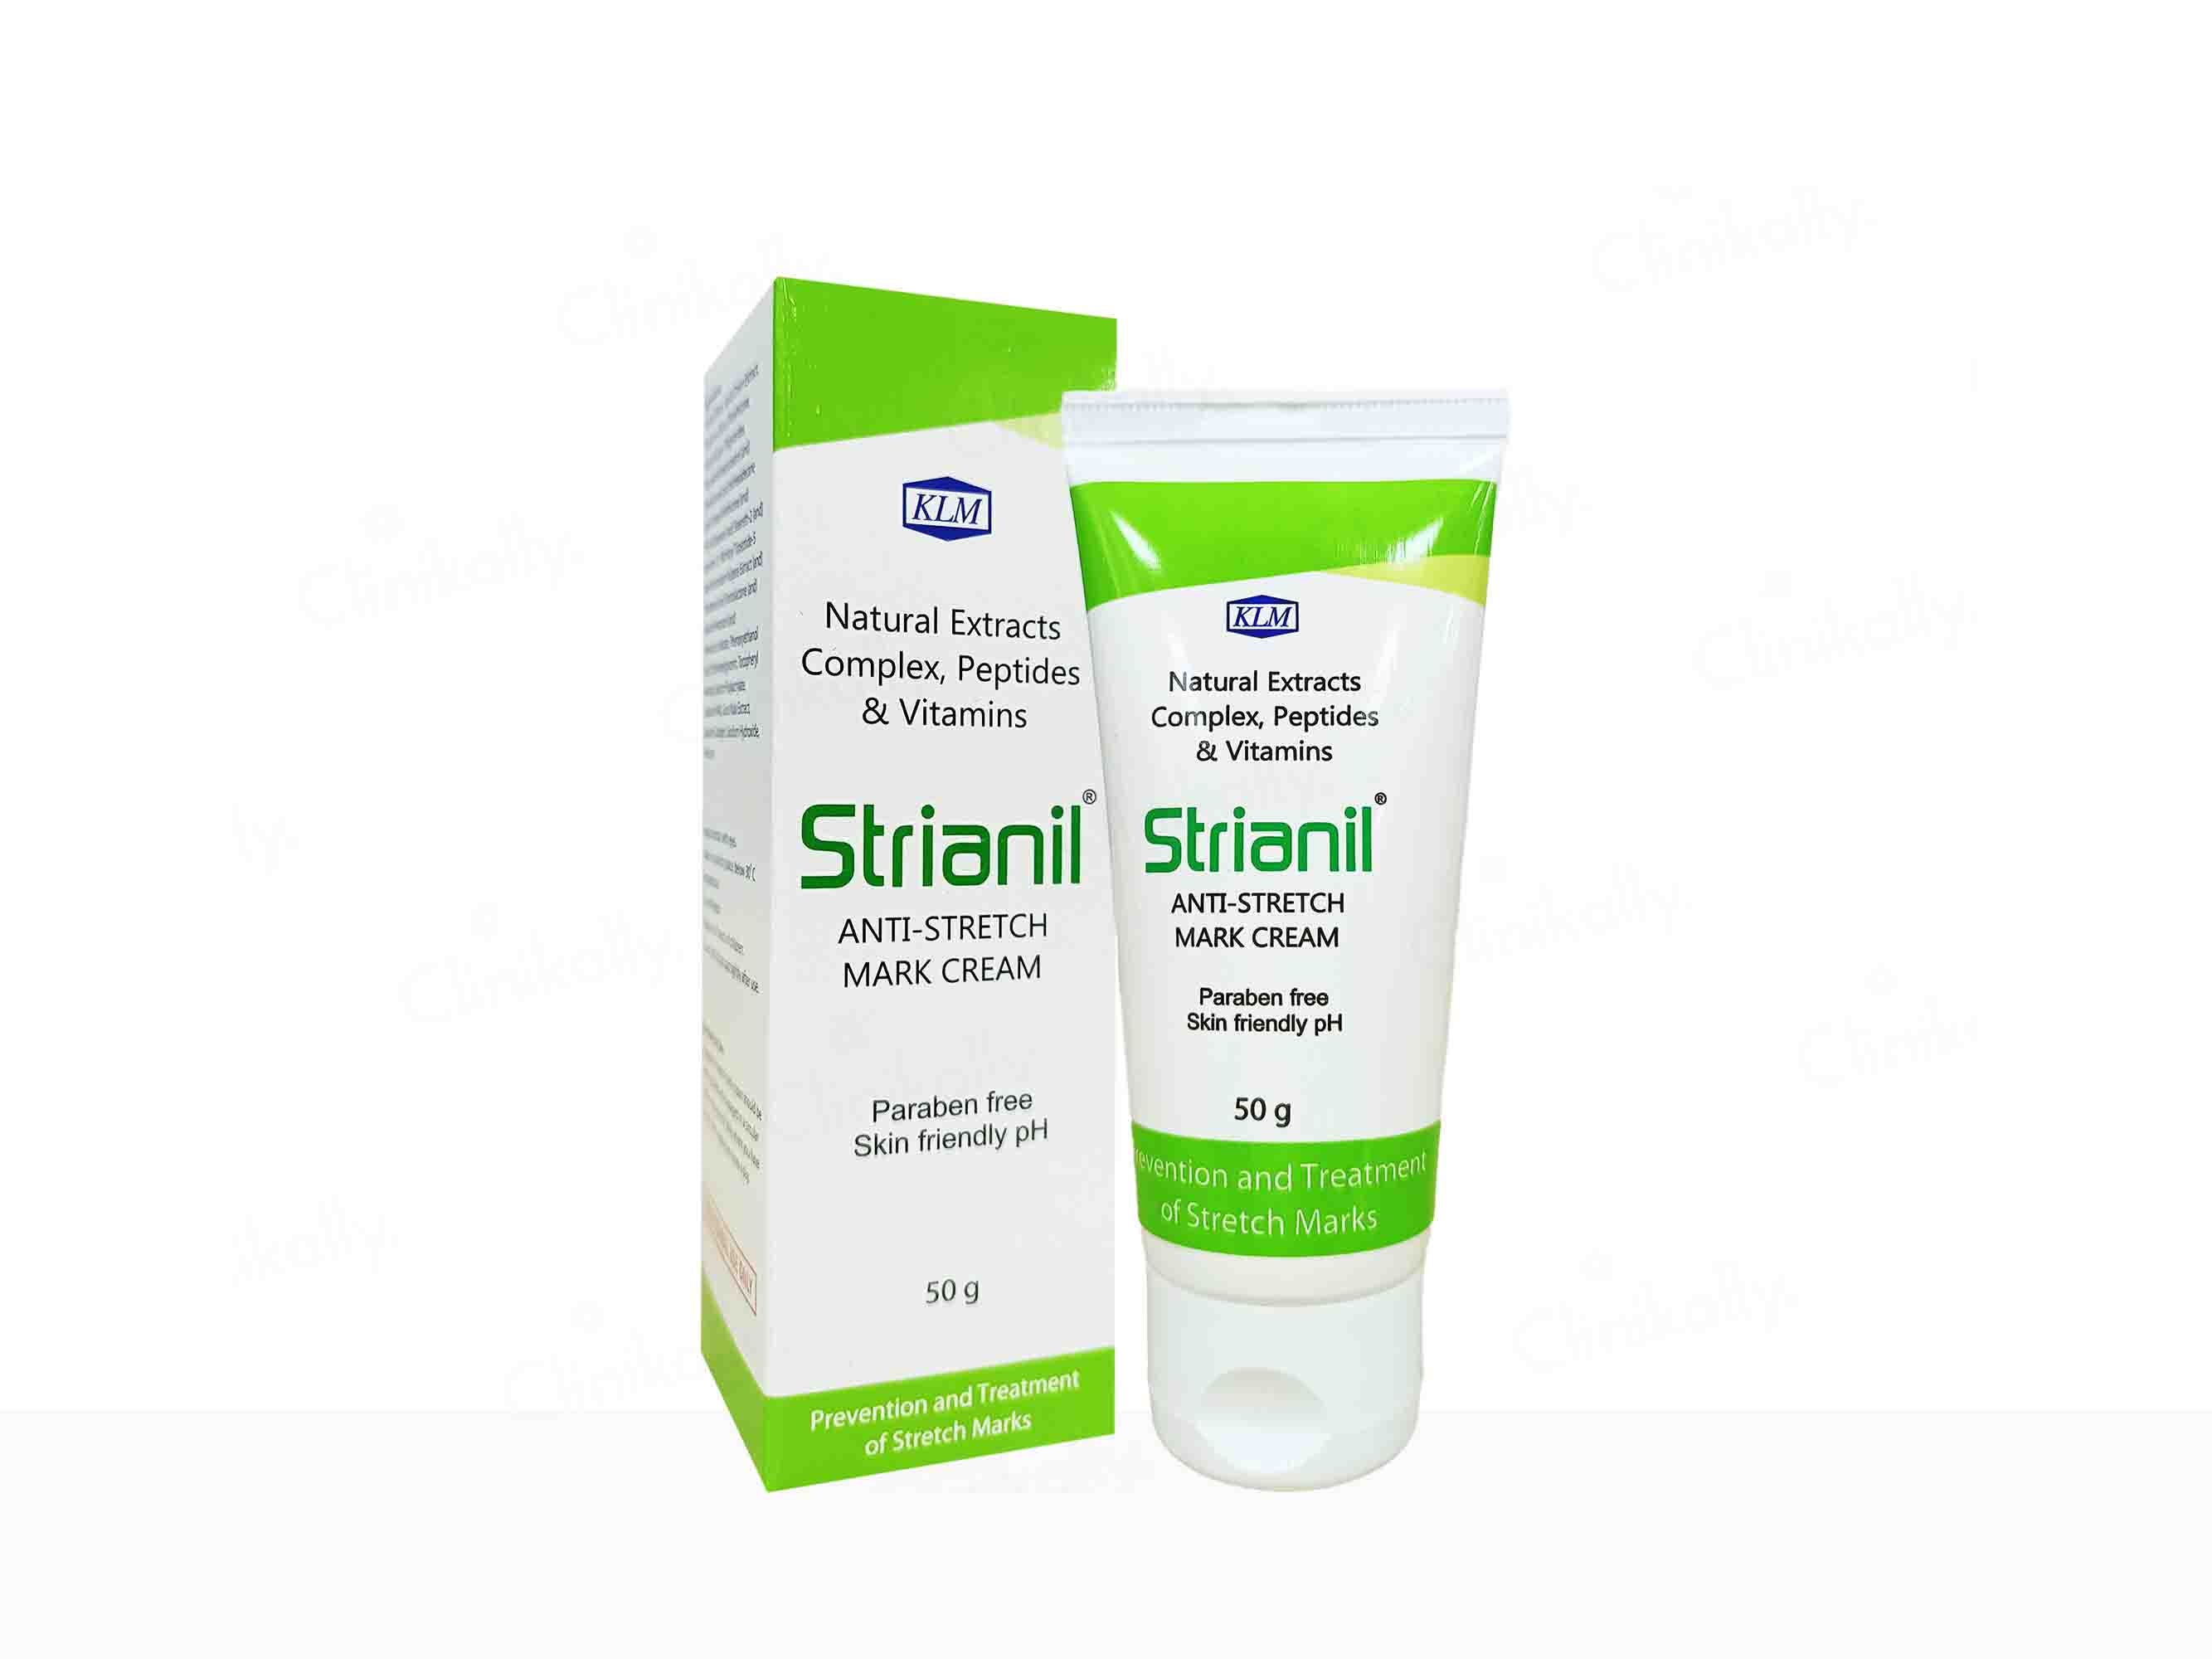 Strianil Anti-Stretch Mark Cream